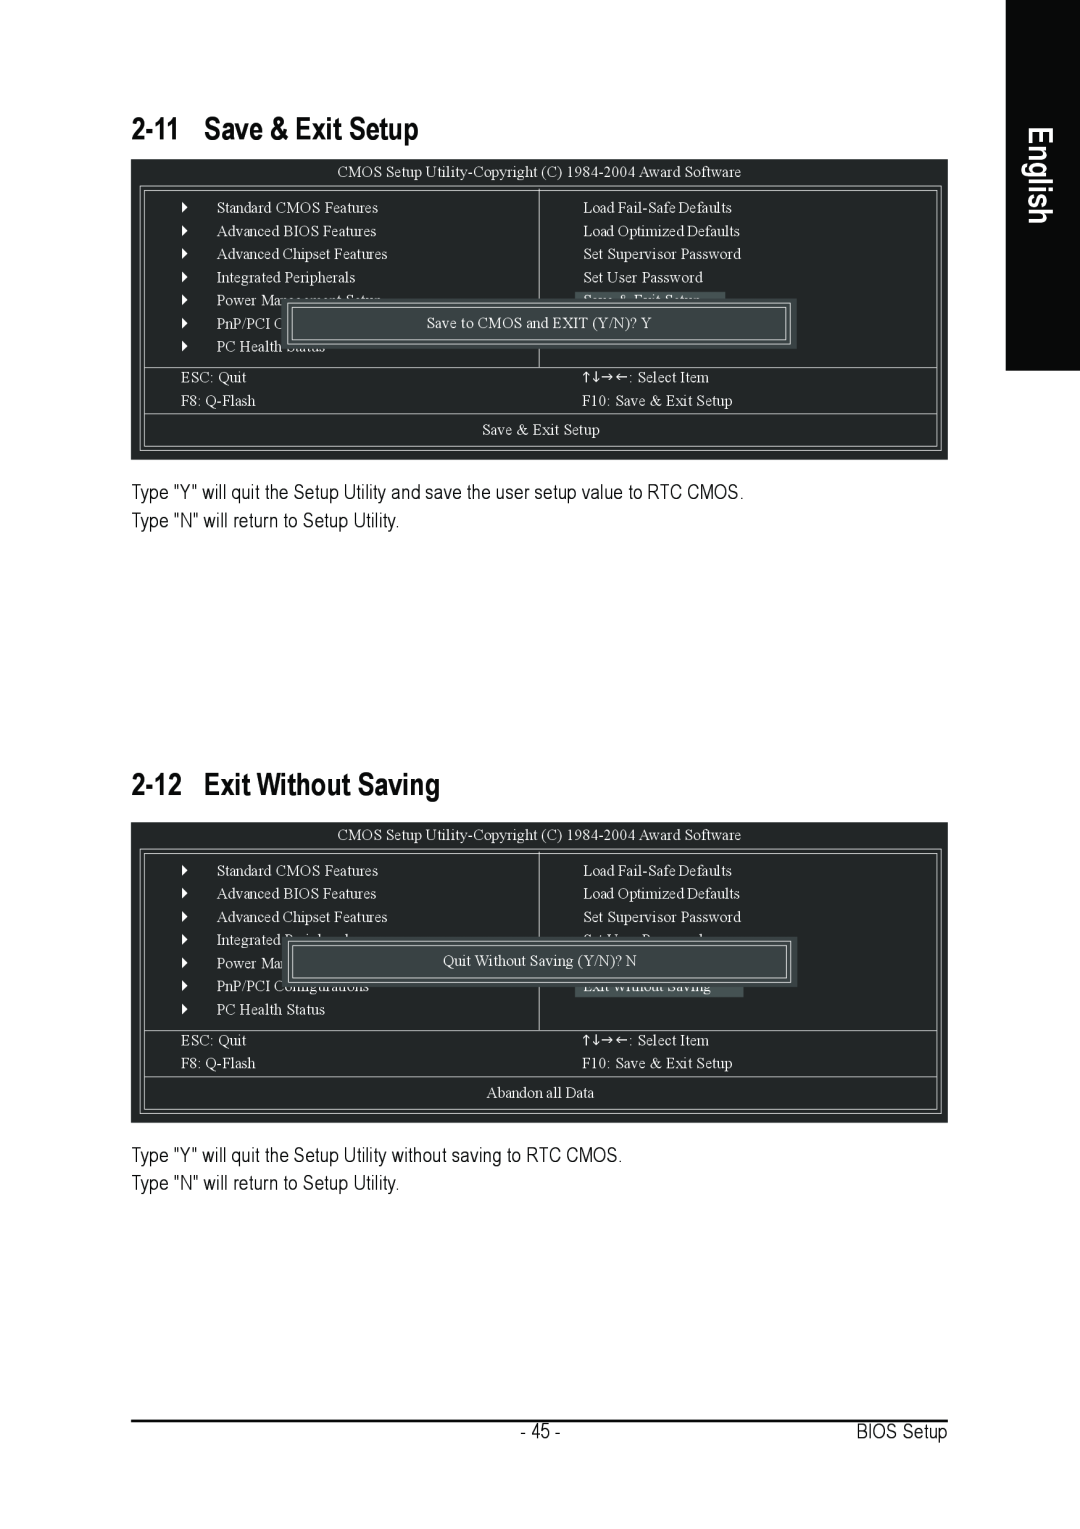 Gigabyte GA-7N400S-L user manual Save & Exit Setup, Exit Without Saving, English, Type N will return to Setup Utility 